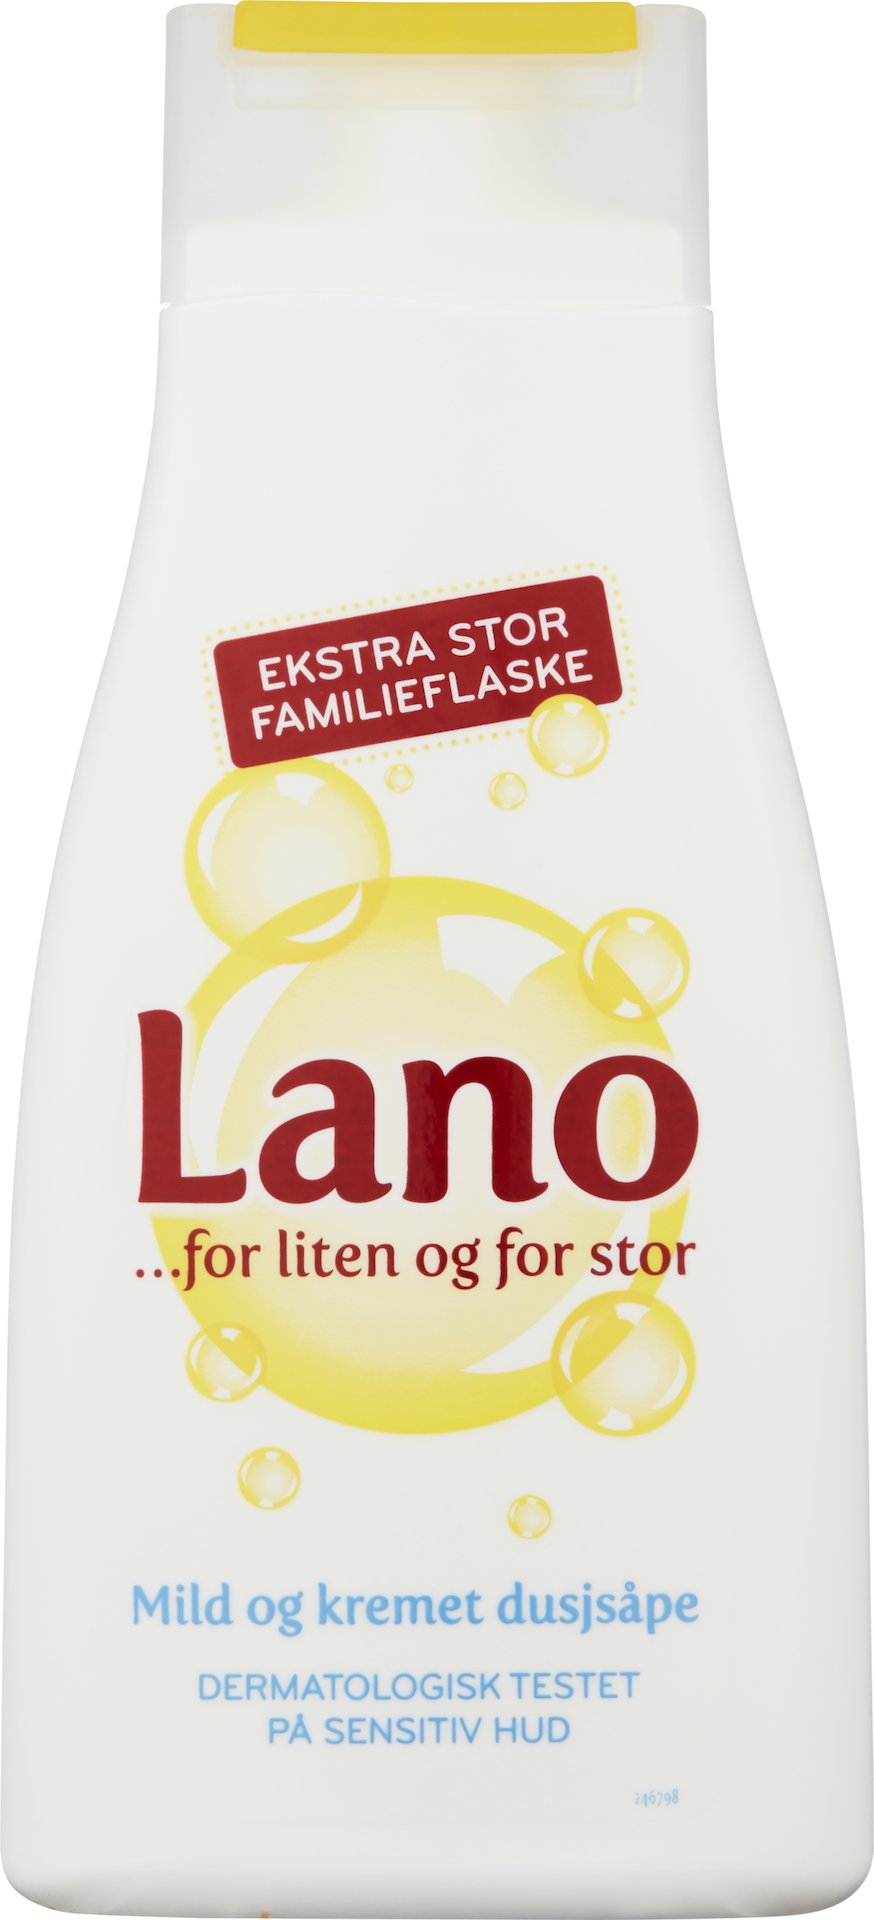 LANO DUSJSÅPE 500ML